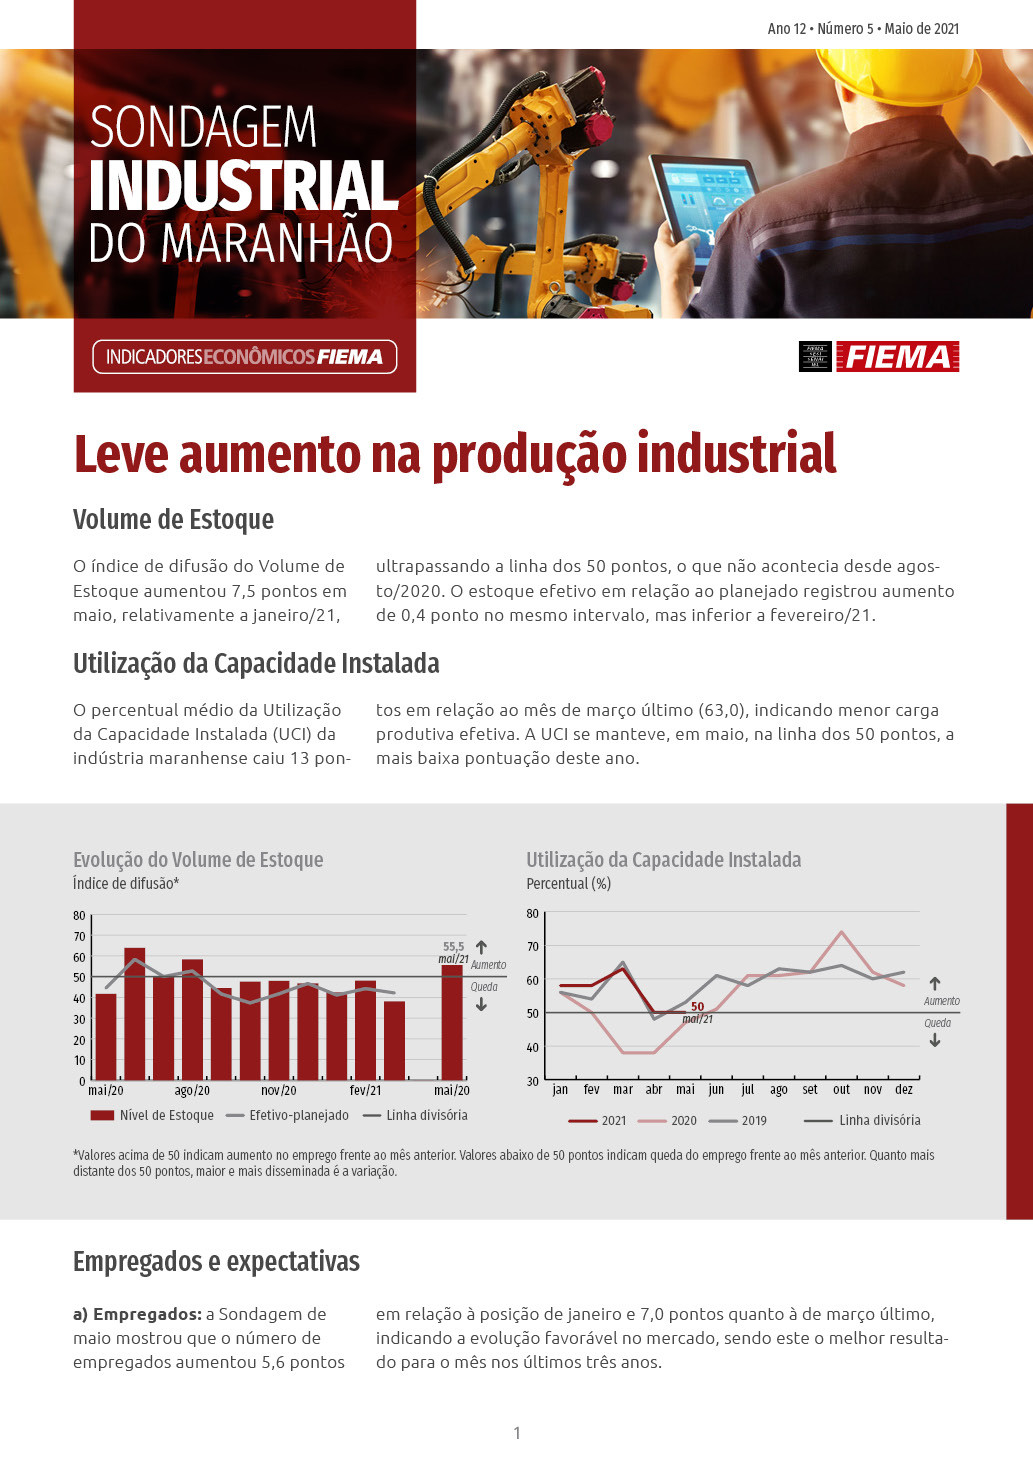 Sondagem Industrial do Maranhão